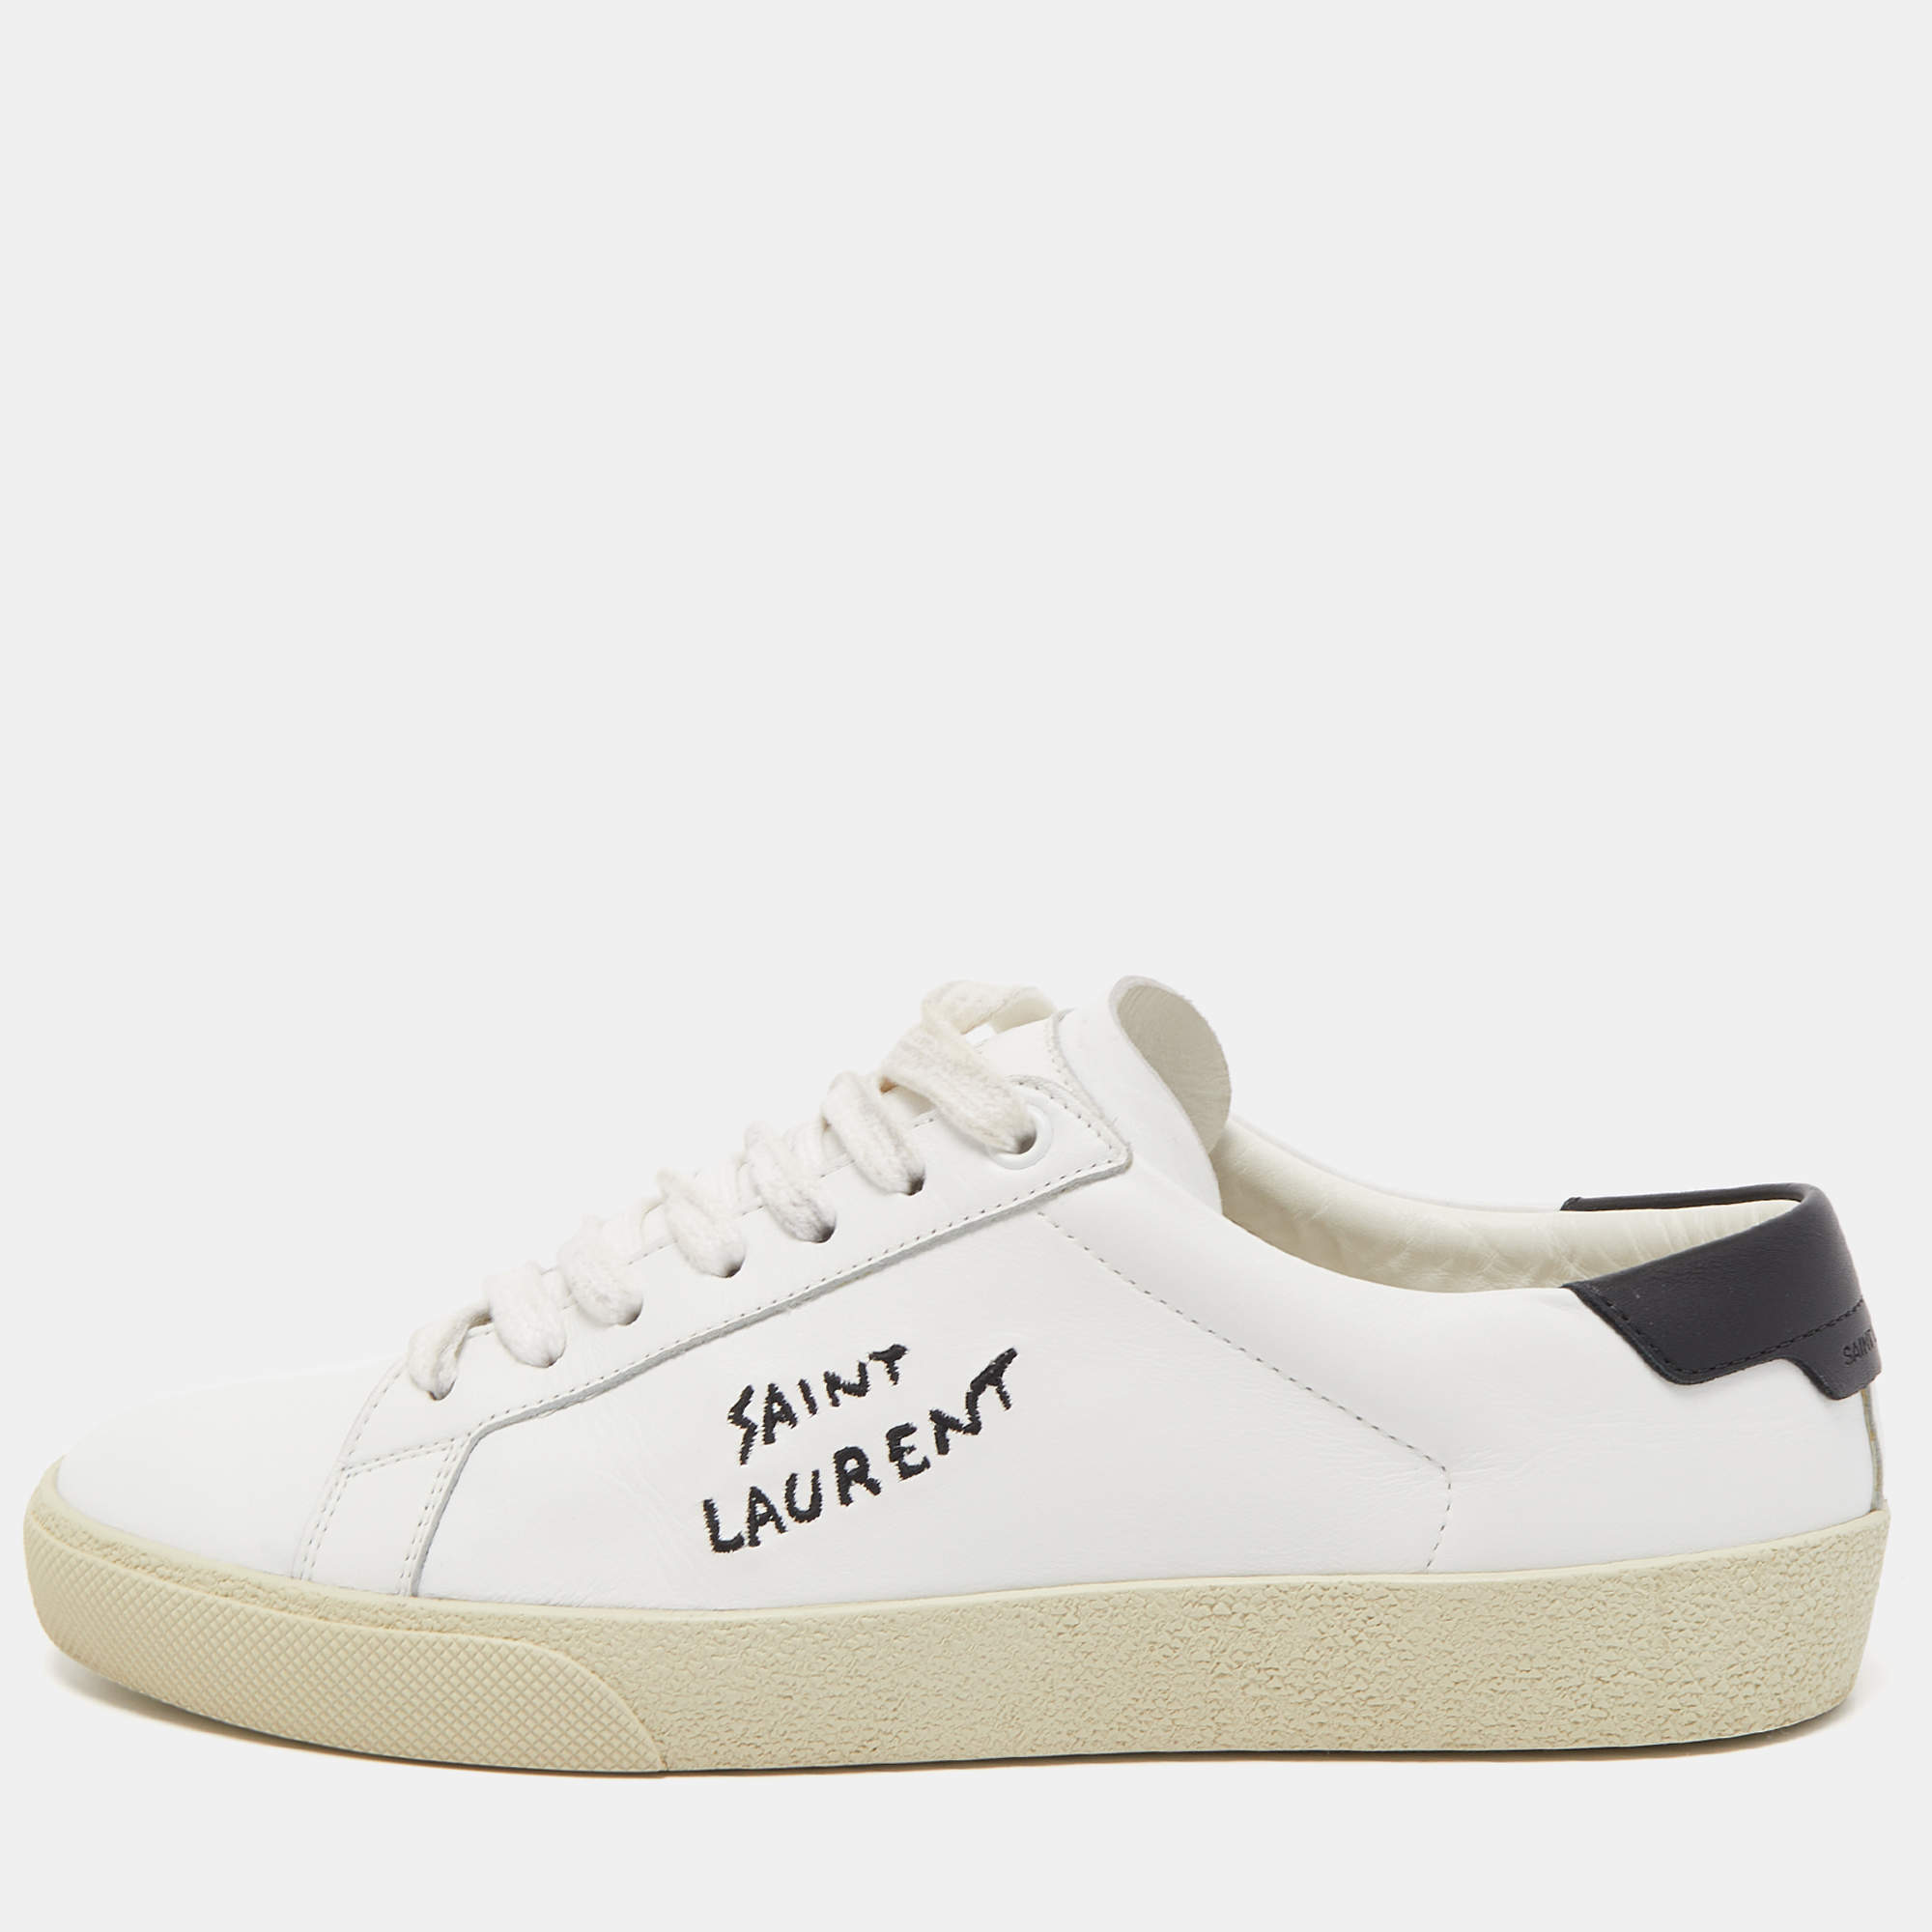 Saint Laurent White Leather Classic Sneakers Size 39 Saint Laurent Paris | TLC